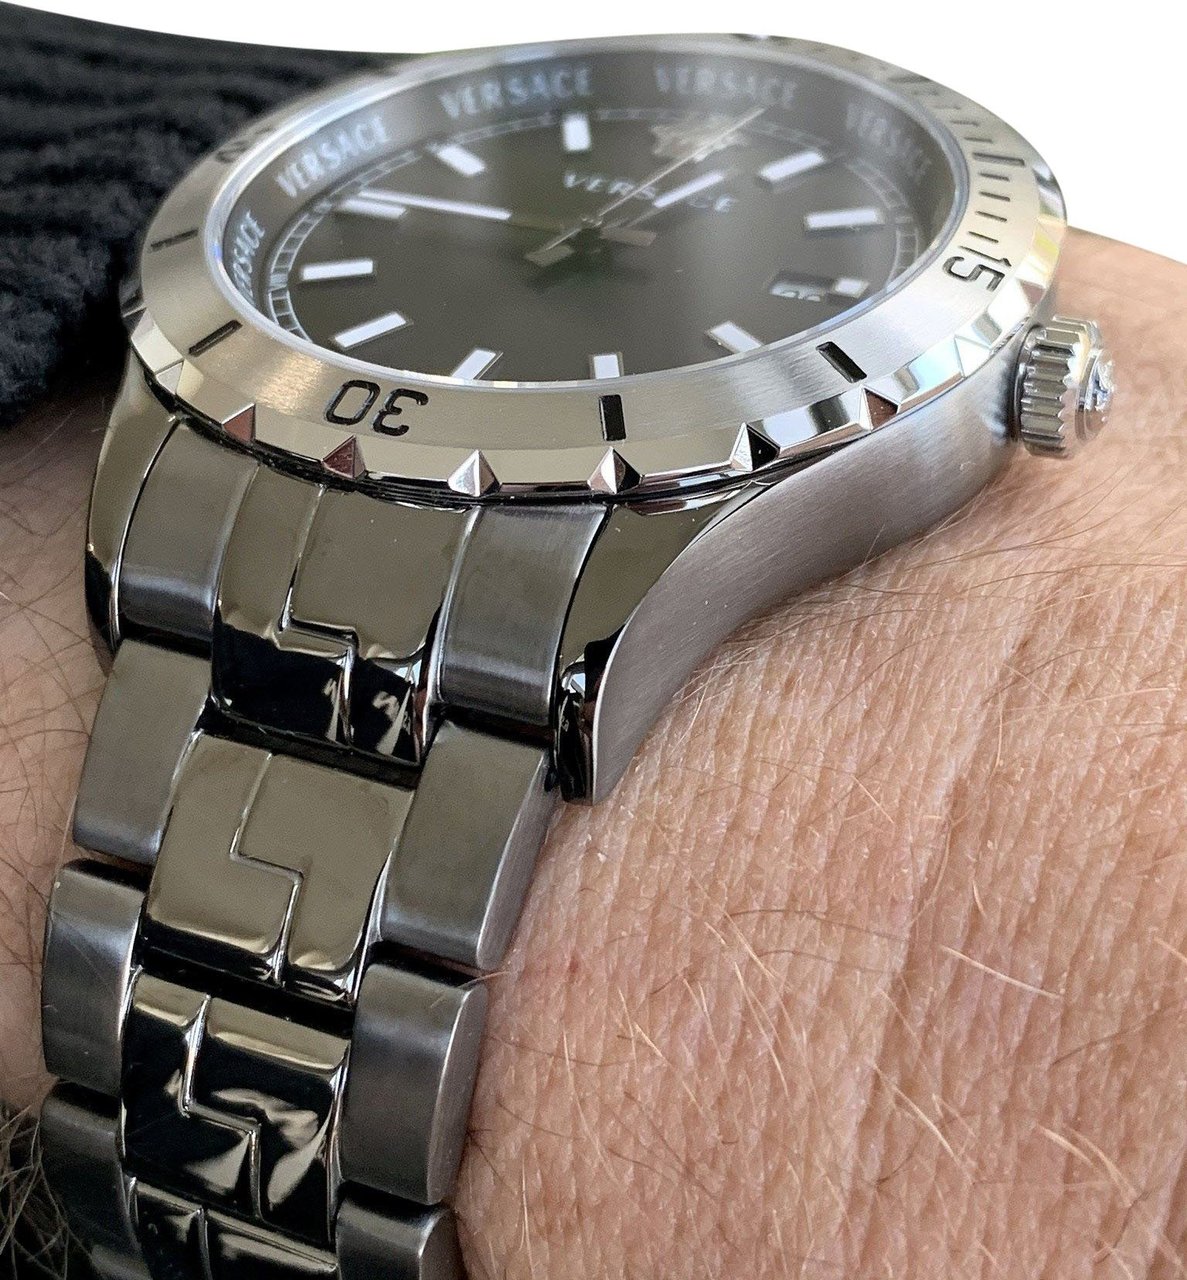 Versace VE3A00620 Hellenyium heren horloge 42 mm Zwart